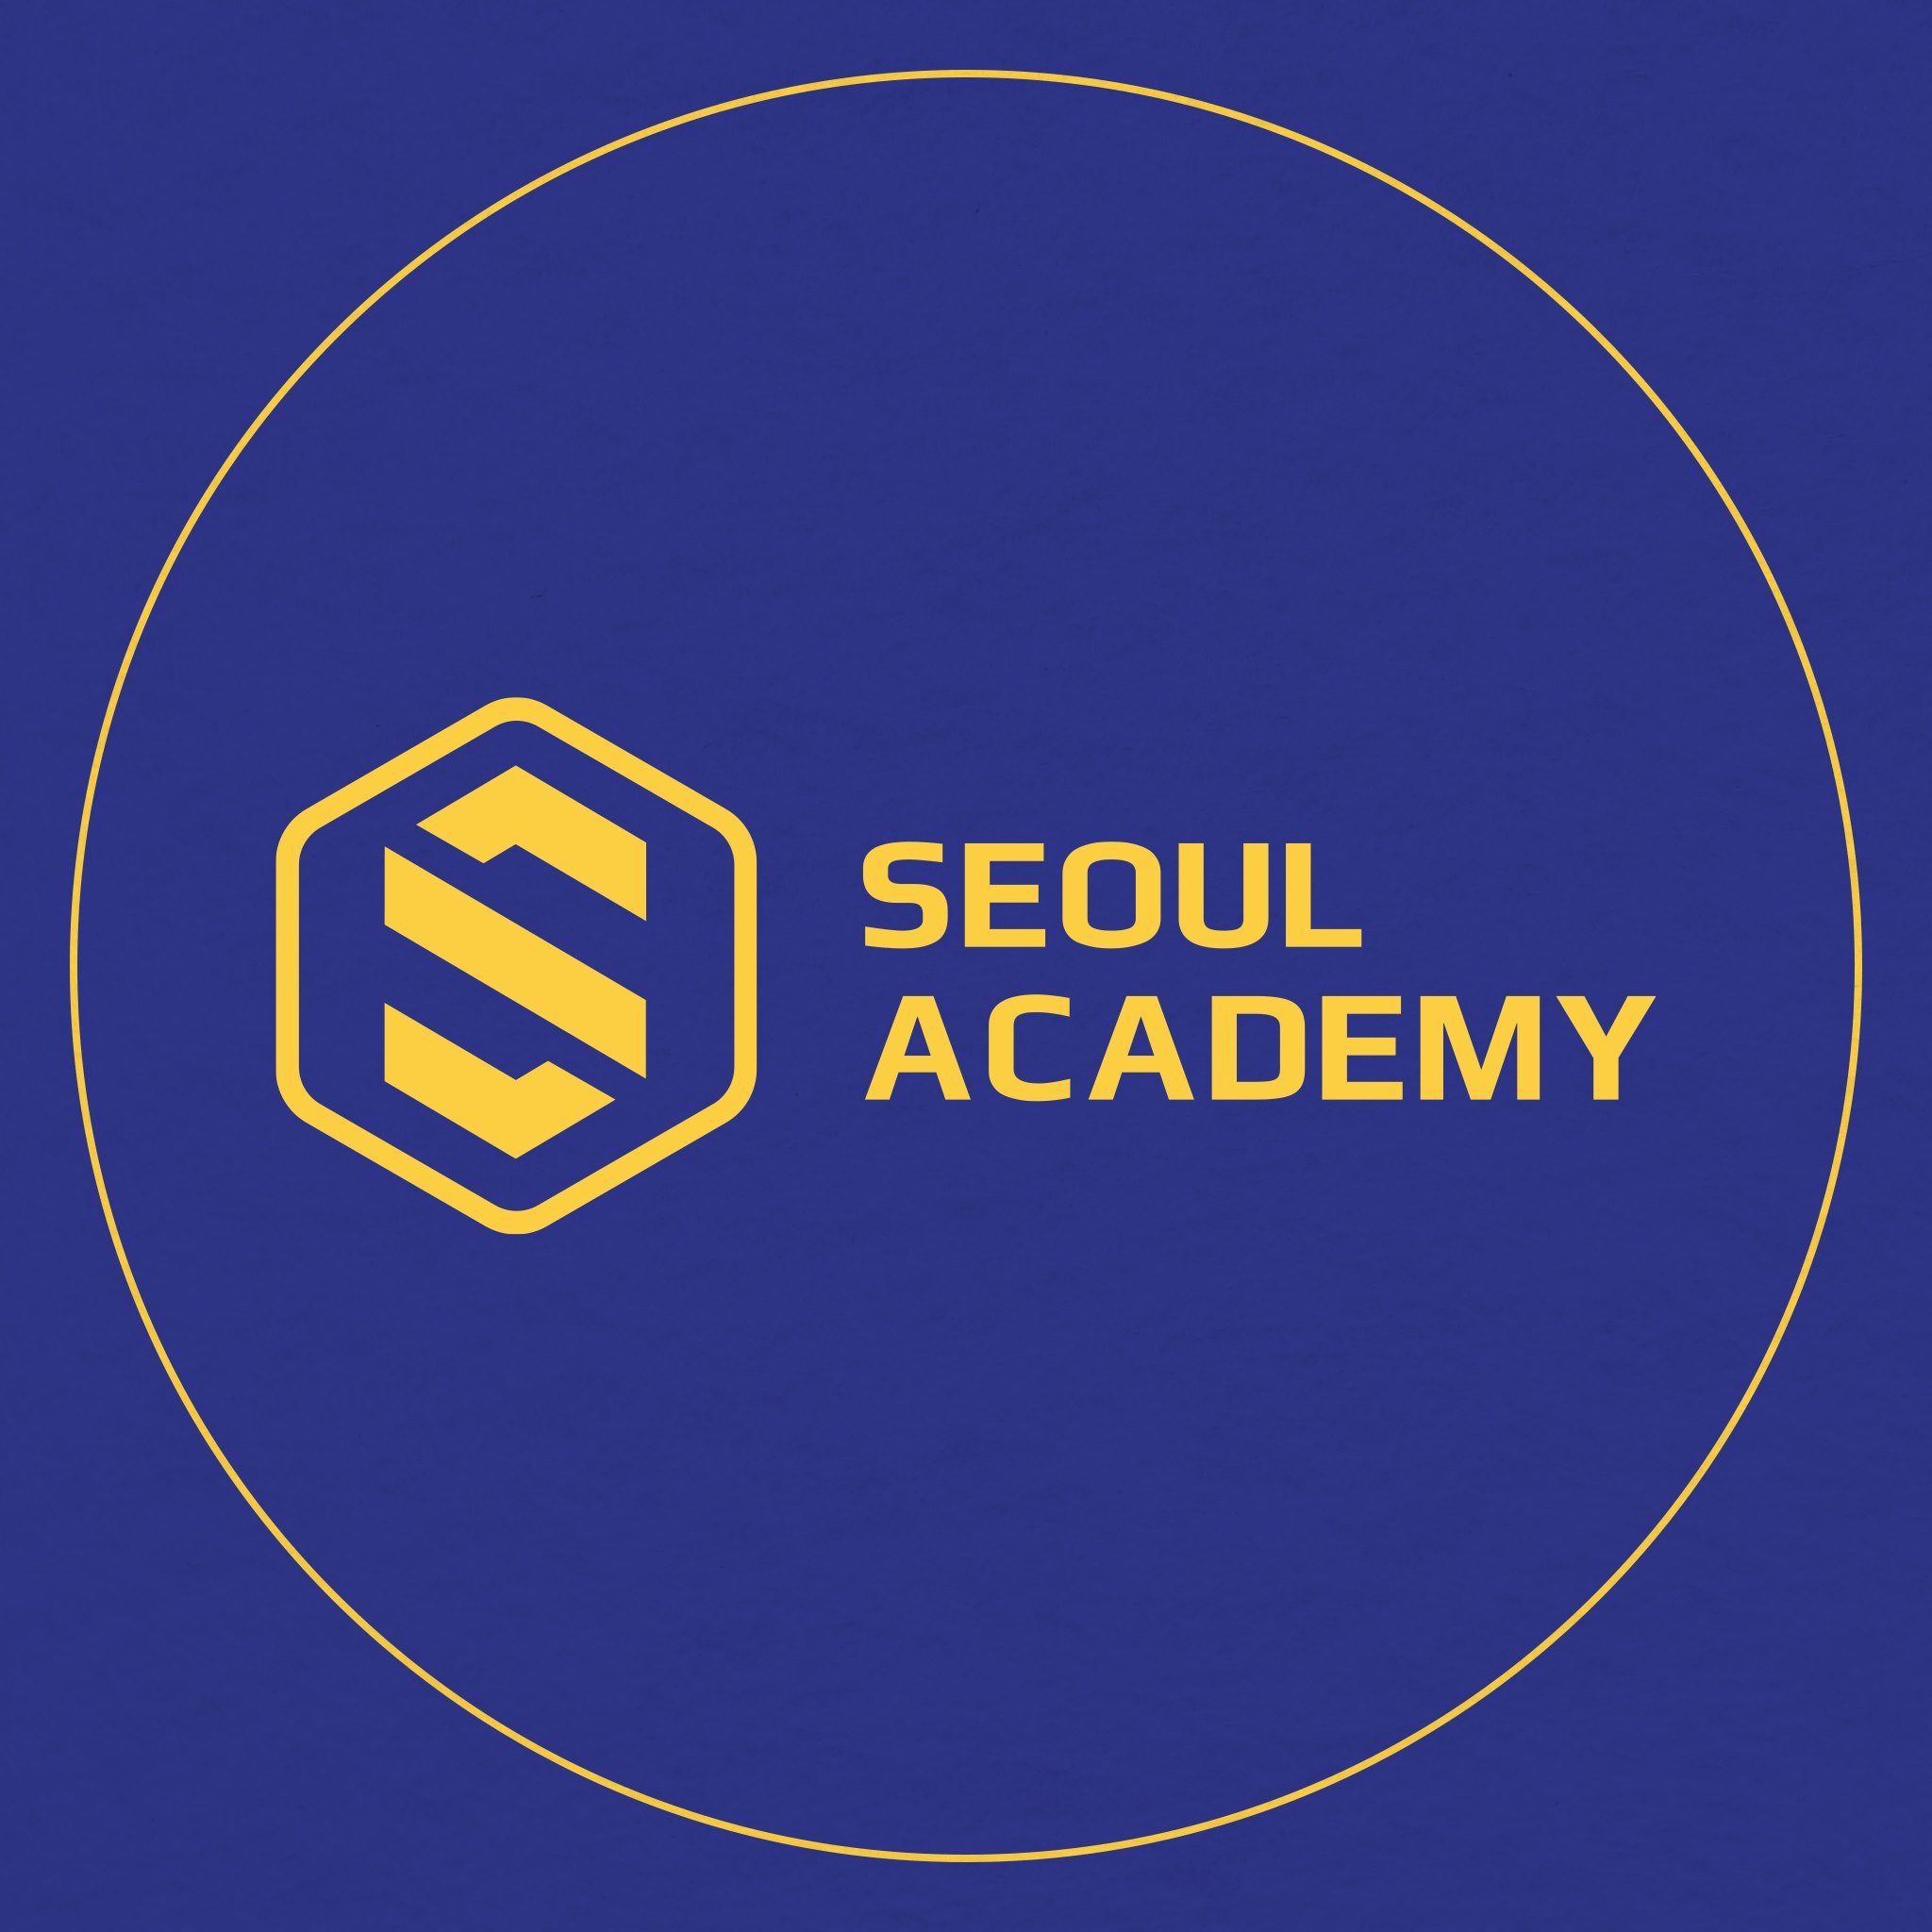 Seoul Academy là đơn vị đào tạo nghề spa chất lượng